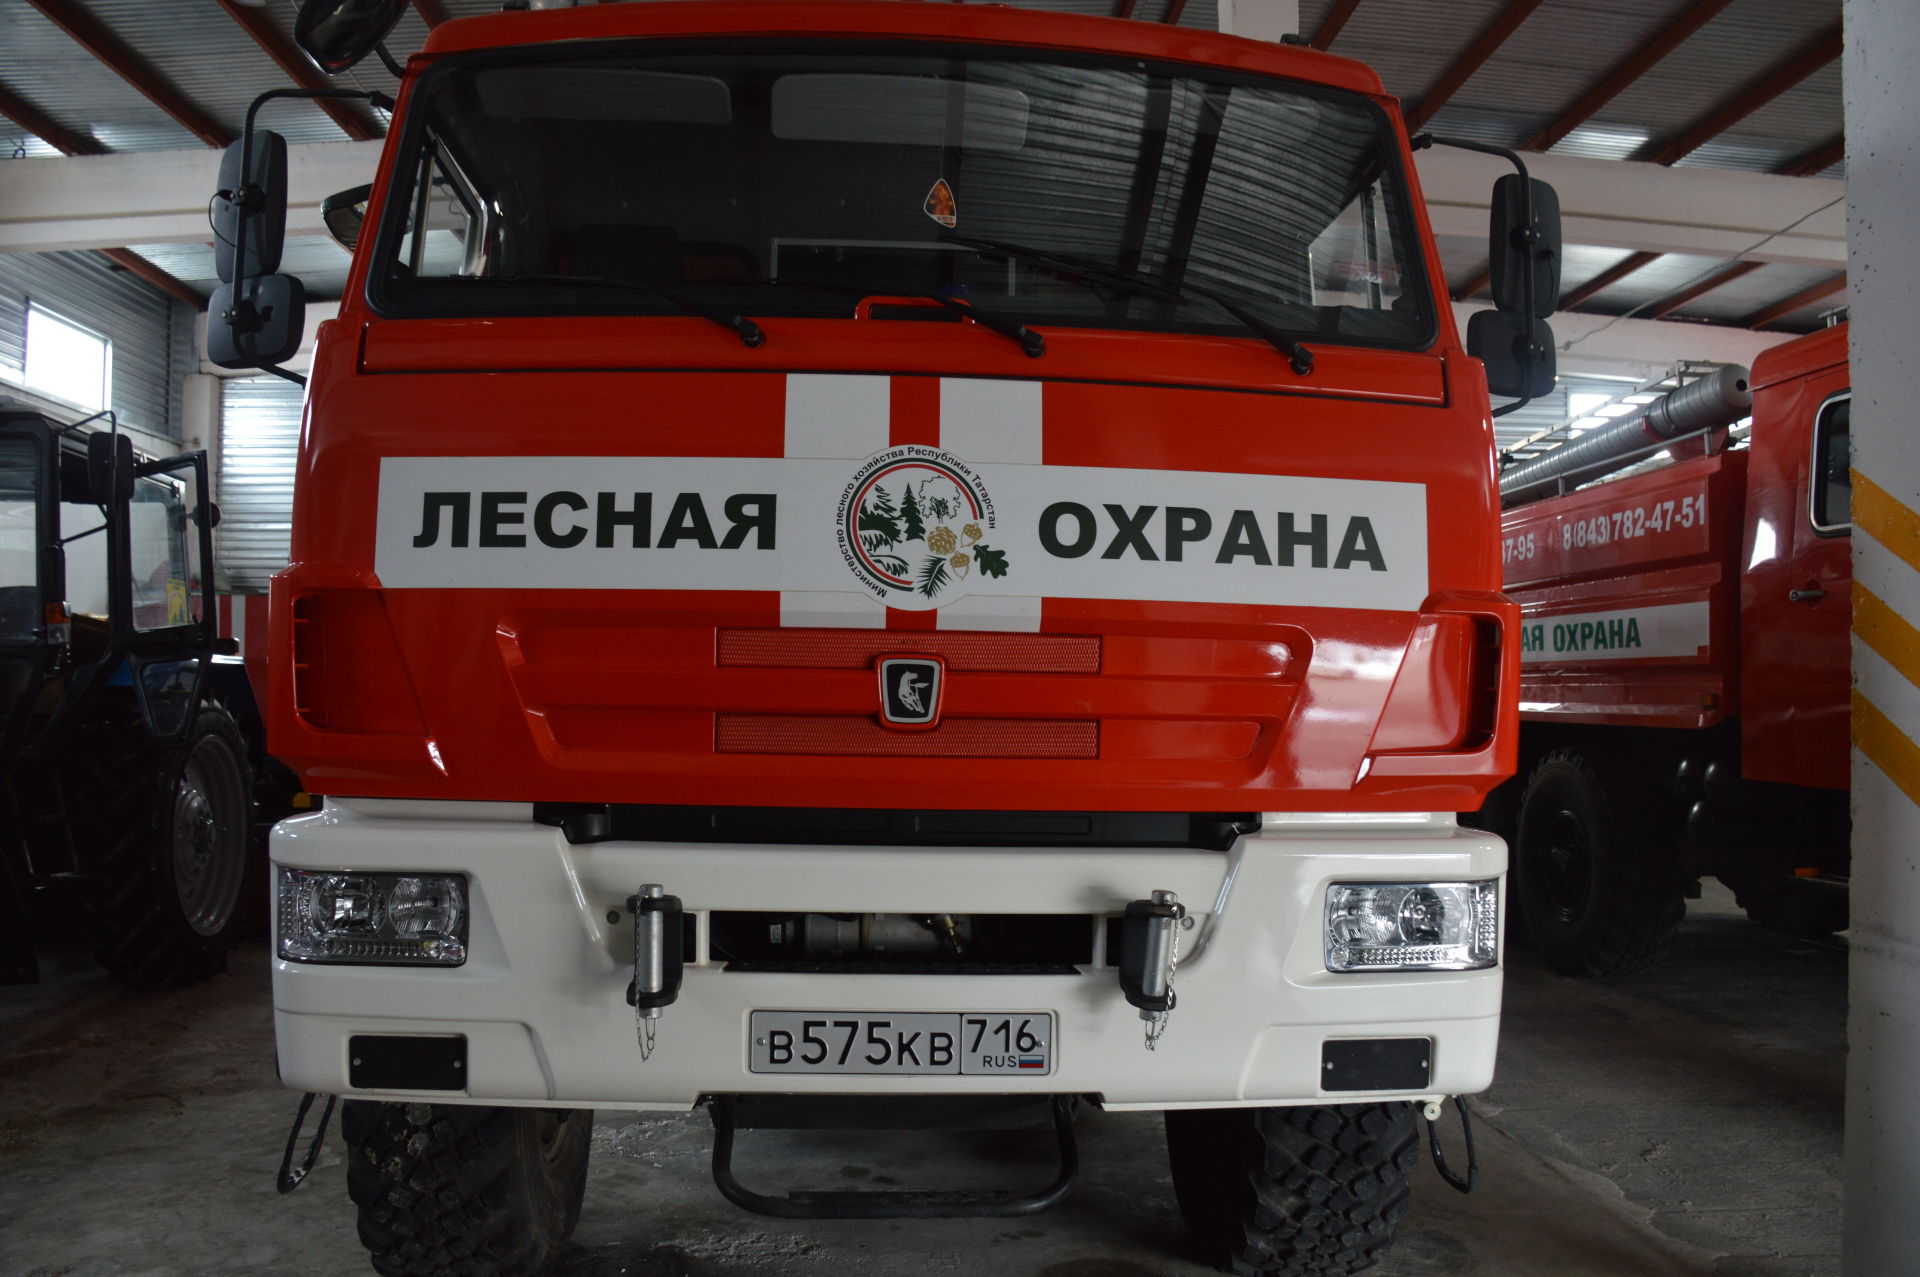 Лесопожарная станция, расположенная в Лаишево, готова к сезону